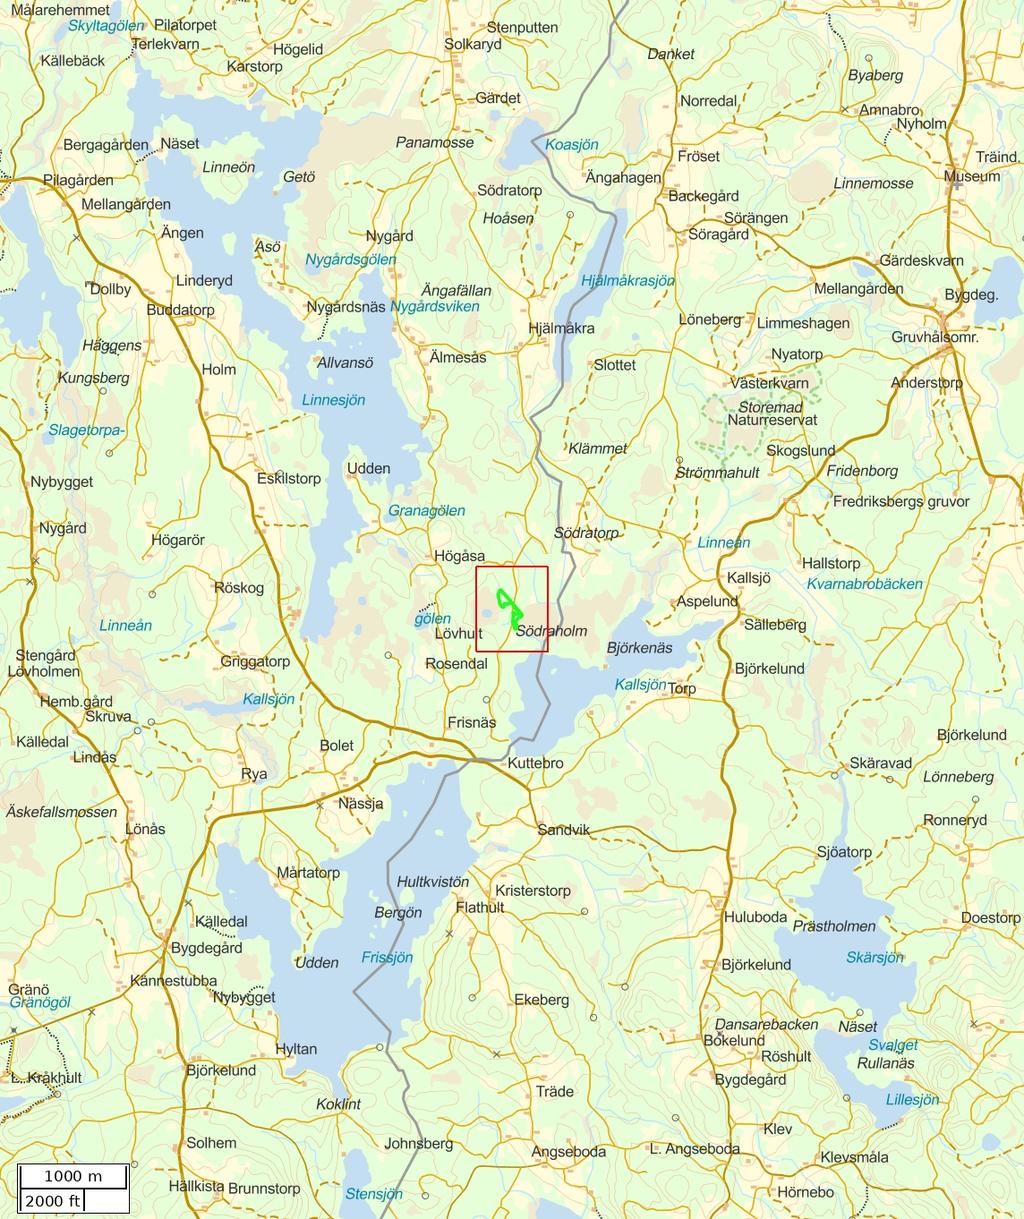 Traktdirektiv 18-12-06 19:00 Solkaryd 3:13 Hushållningssällskapet Skog Översiktskarta Skala: ~1:50000